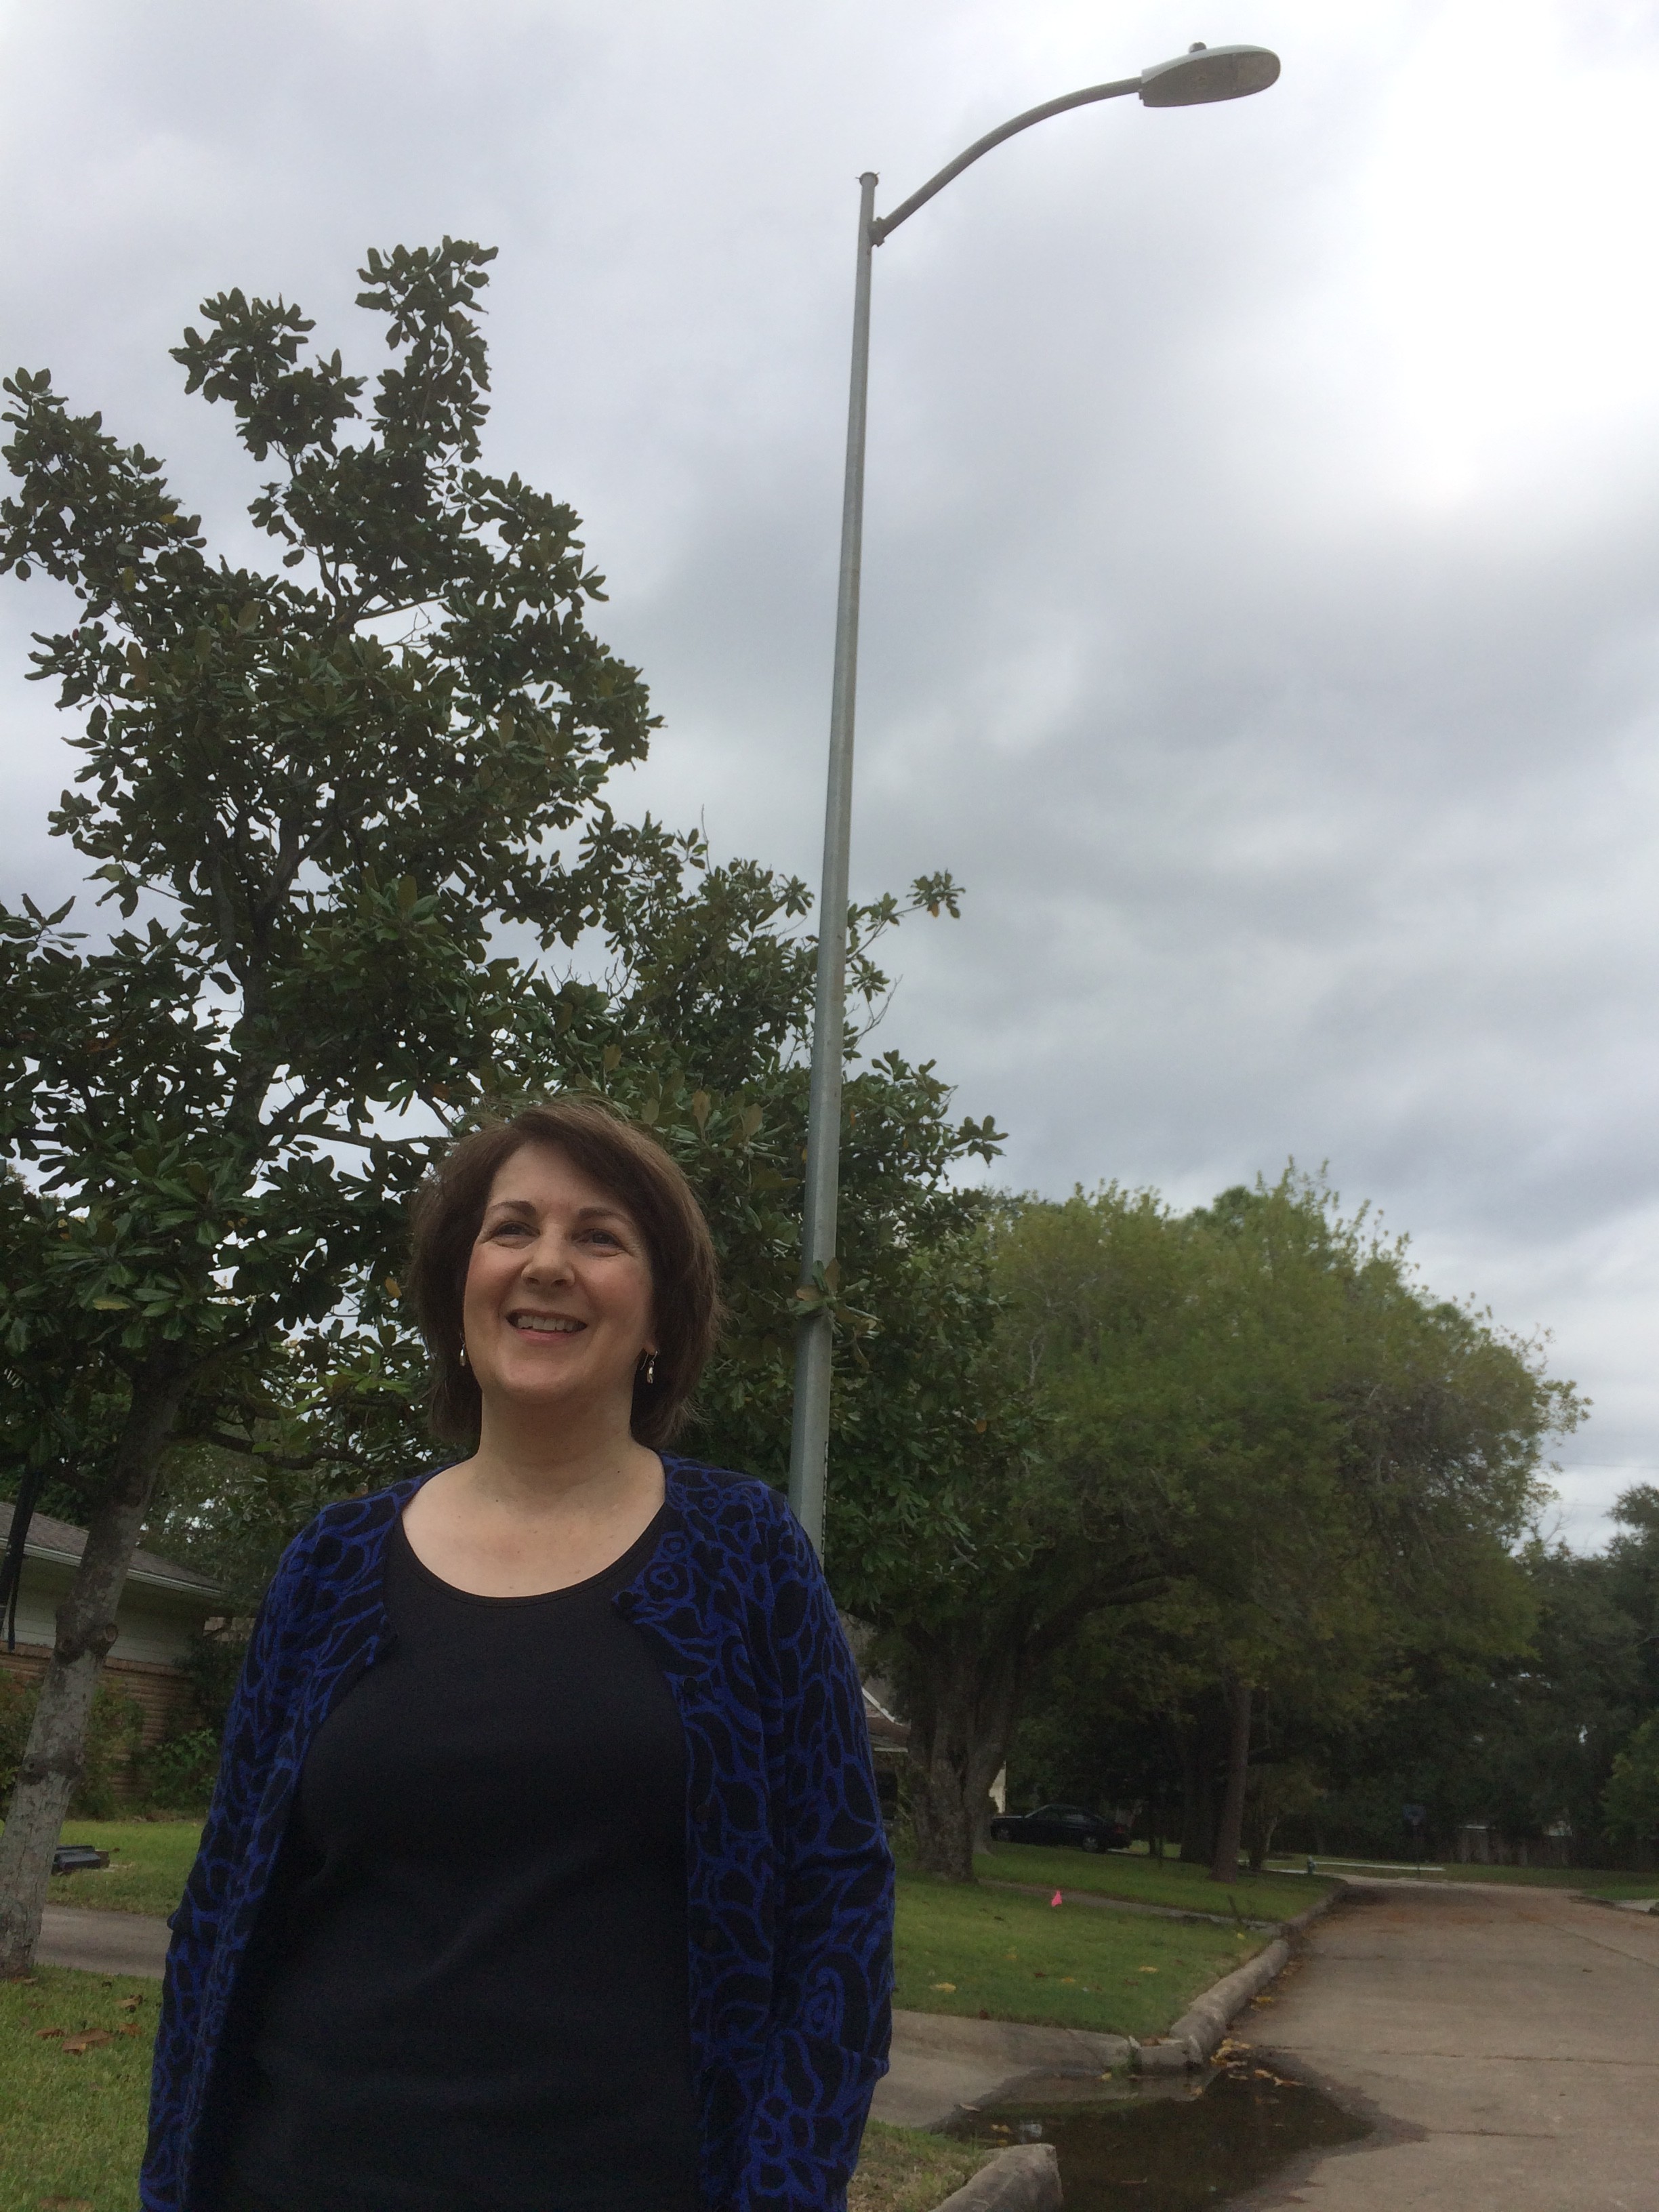 Debbie Moran in front of a light pole